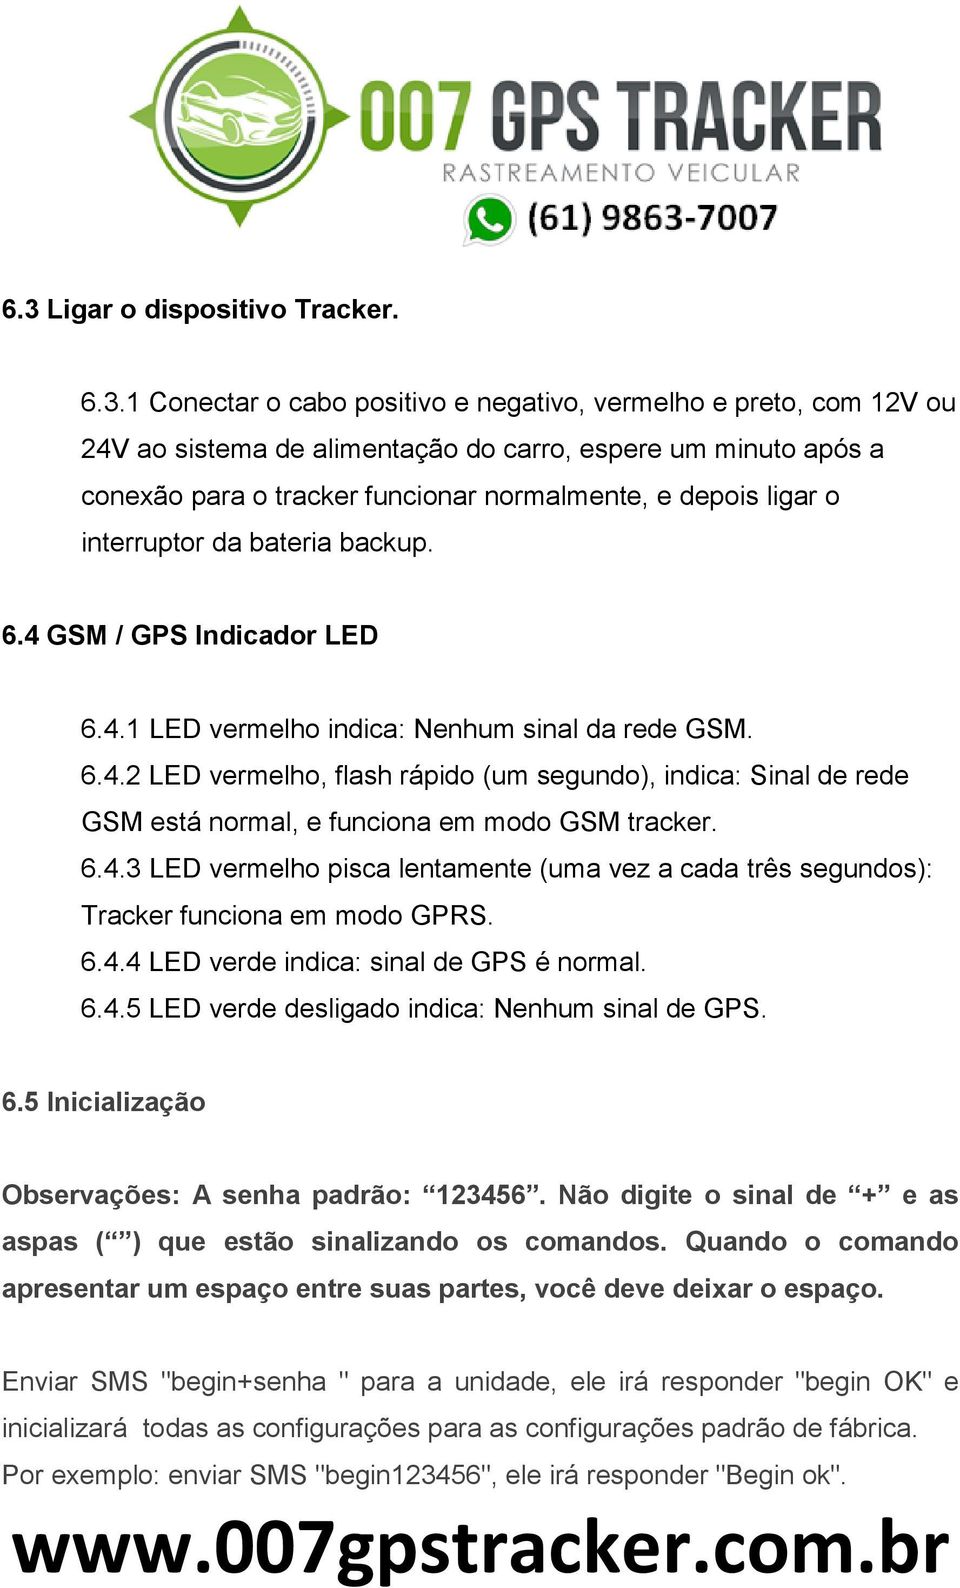 6.4.3 LED vermelho pisca lentamente (uma vez a cada três segundos): Tracker funciona em modo GPRS. 6.4.4 LED verde indica: sinal de GPS é normal. 6.4.5 LED verde desligado indica: Nenhum sinal de GPS.